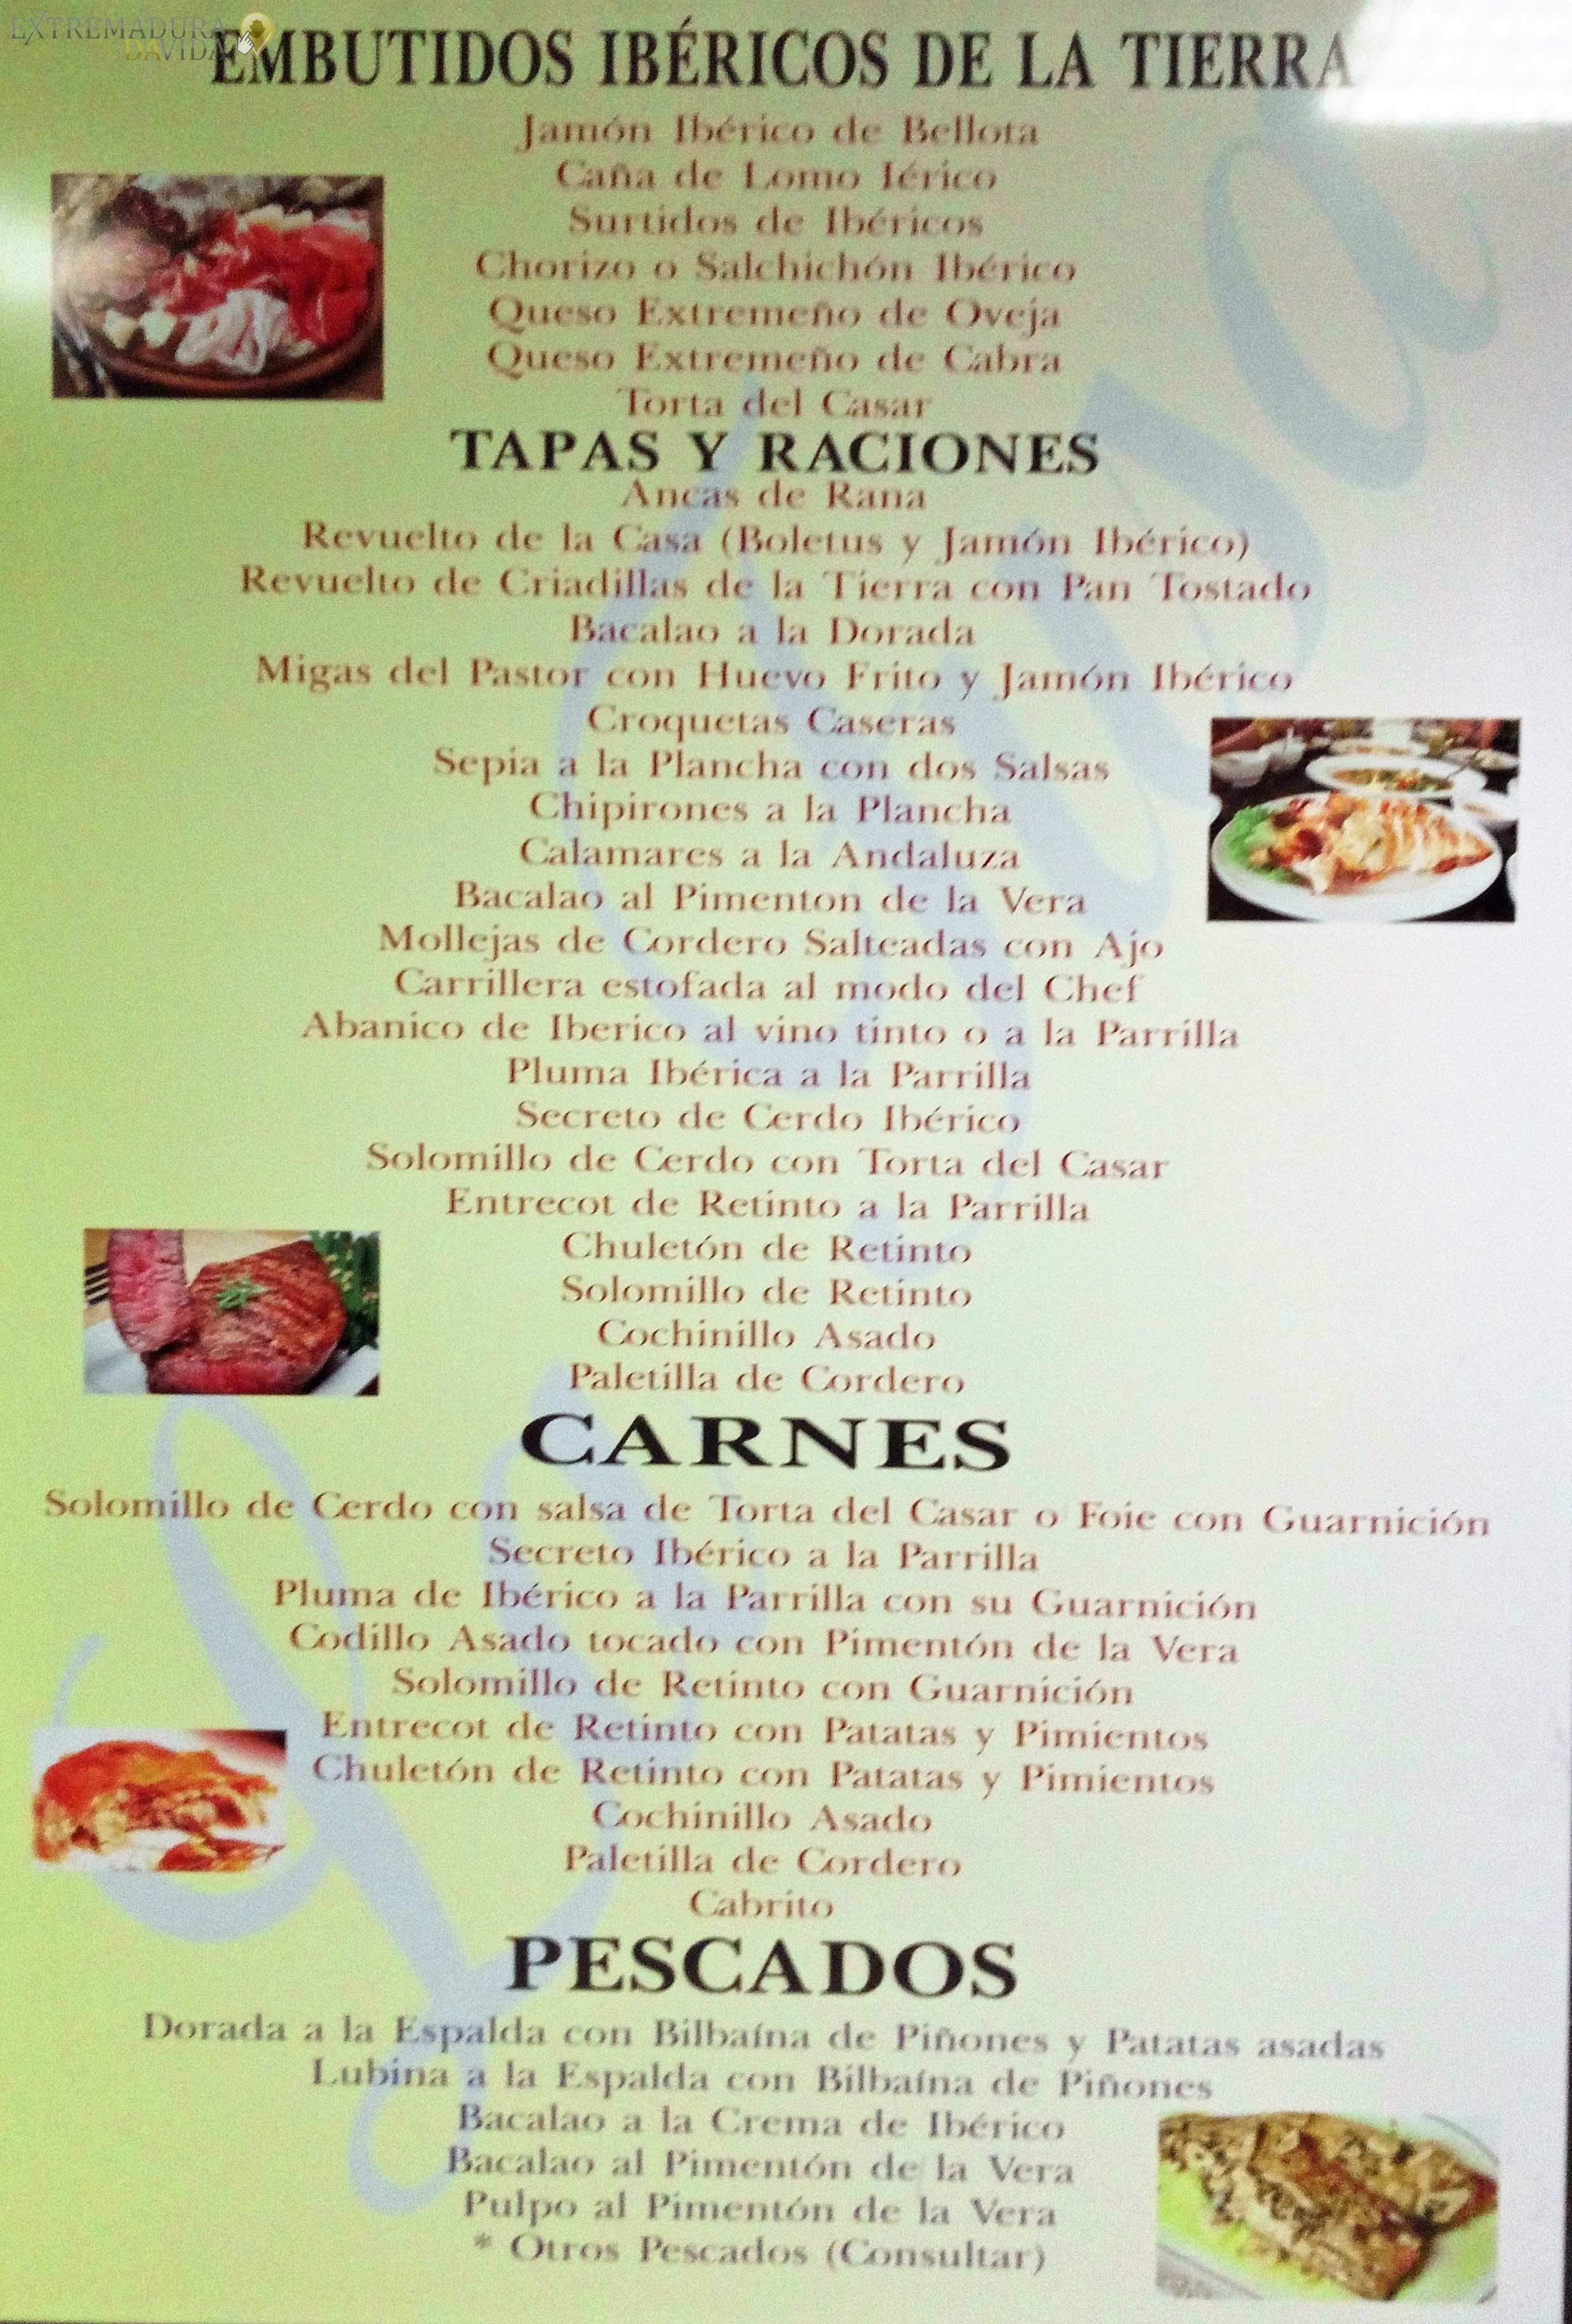 Tencas ancas de rana en Cáceres Restaurante la Fusa